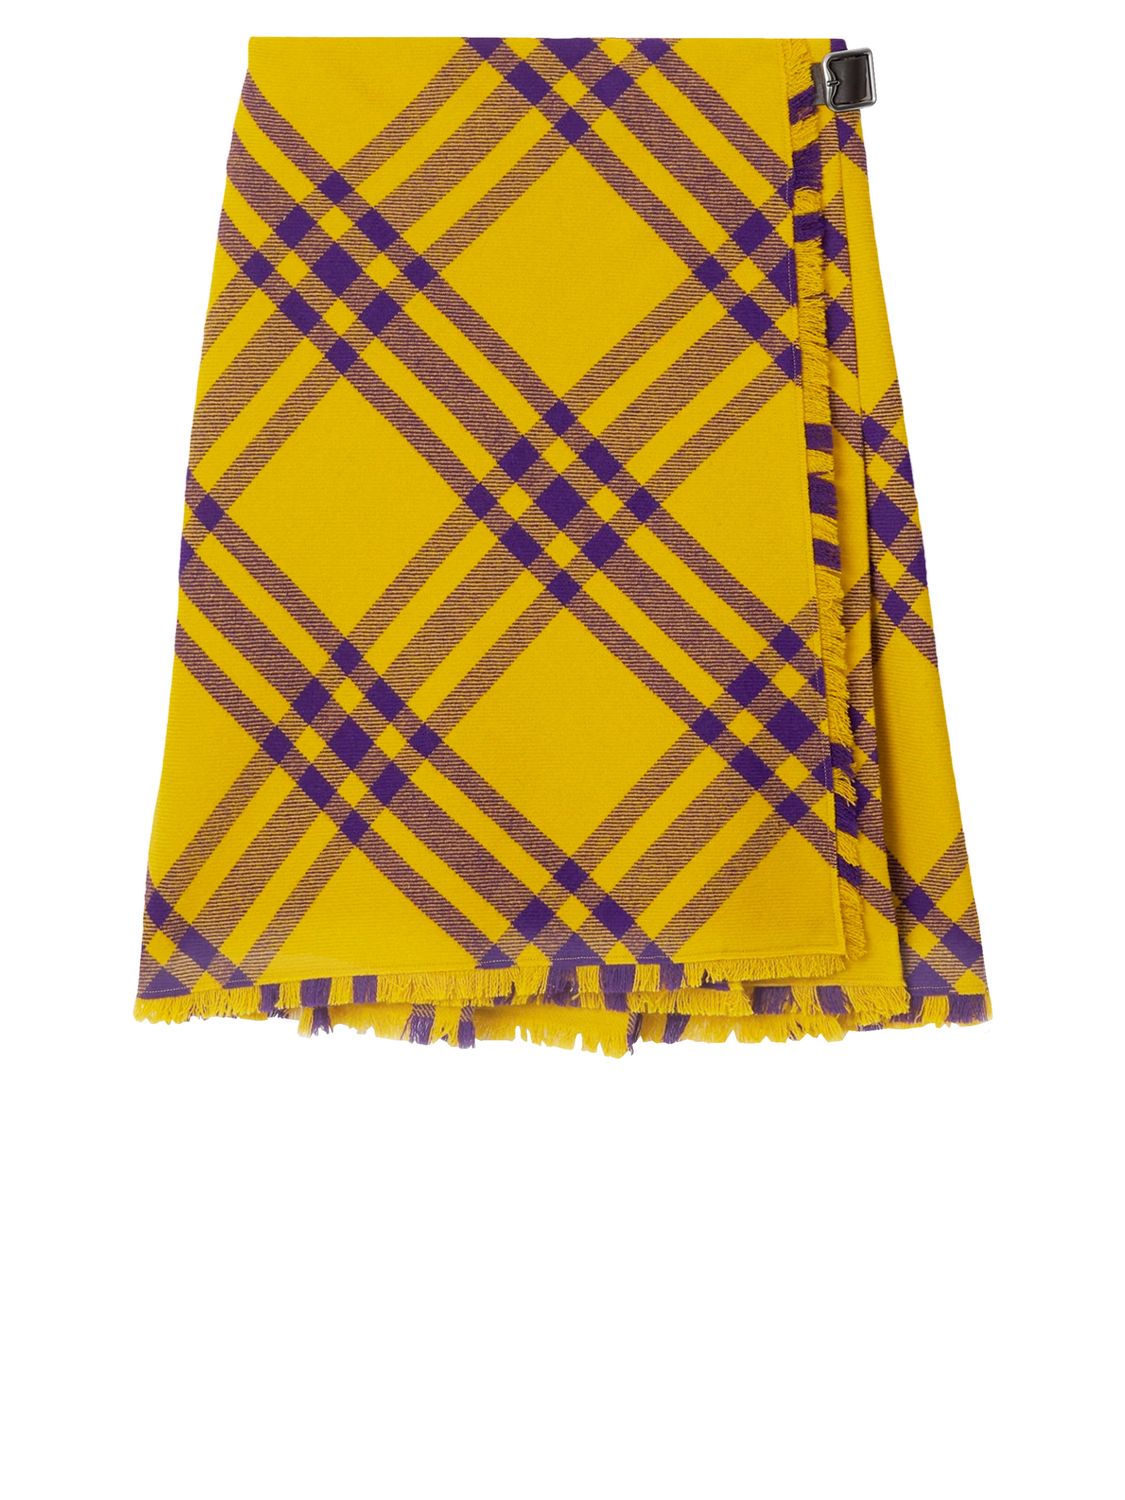  黄紫色羊毛全棉方格褶裙-女款 (不含品牌名称，避免外来语)